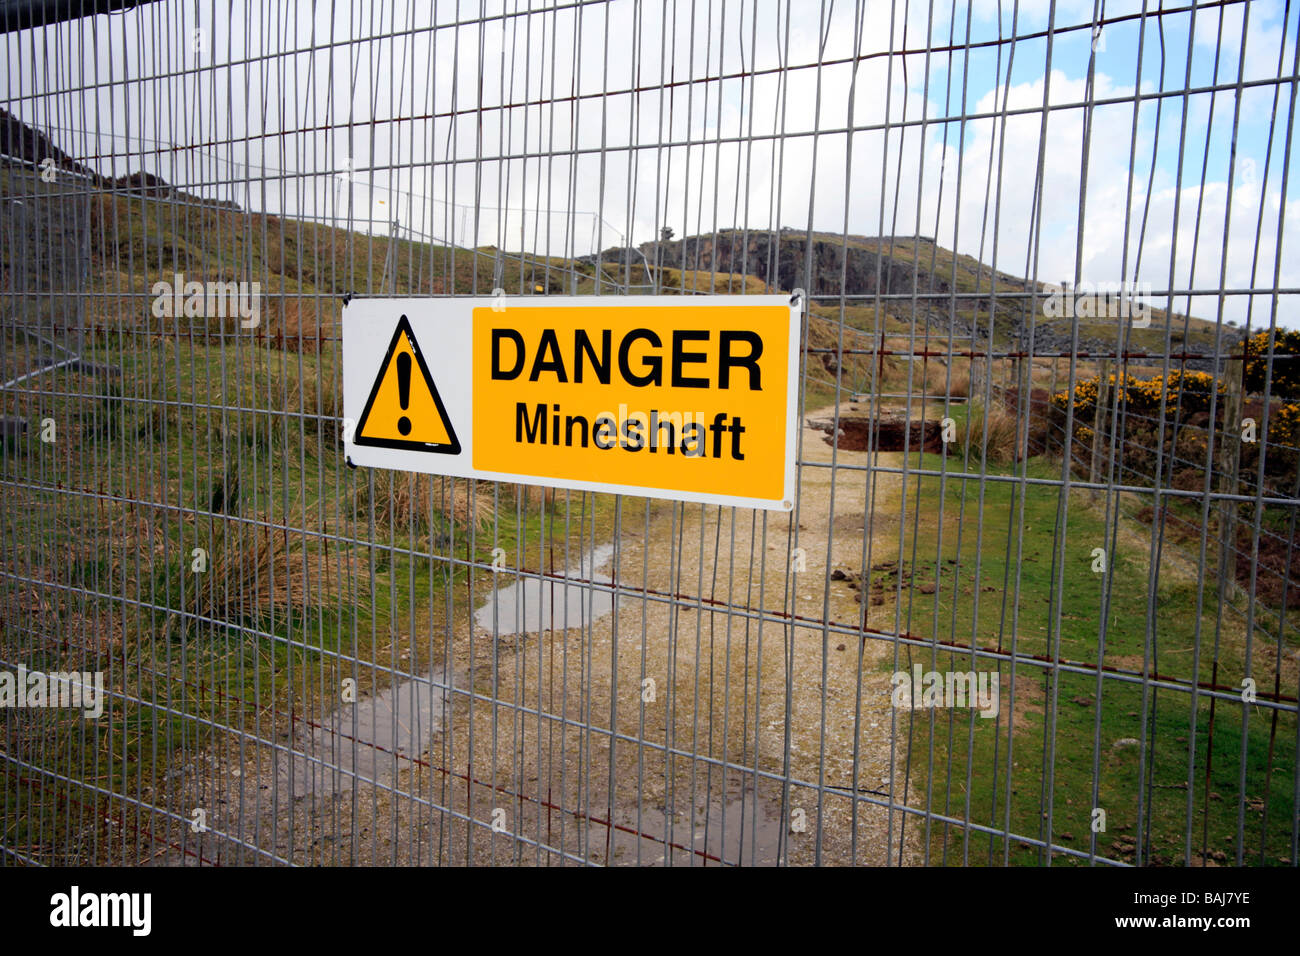 Gefahr mir Welle Zeichen am Zaun Schutz Minenschacht Zusammenbruch Schergen Cornwall England Stockfoto